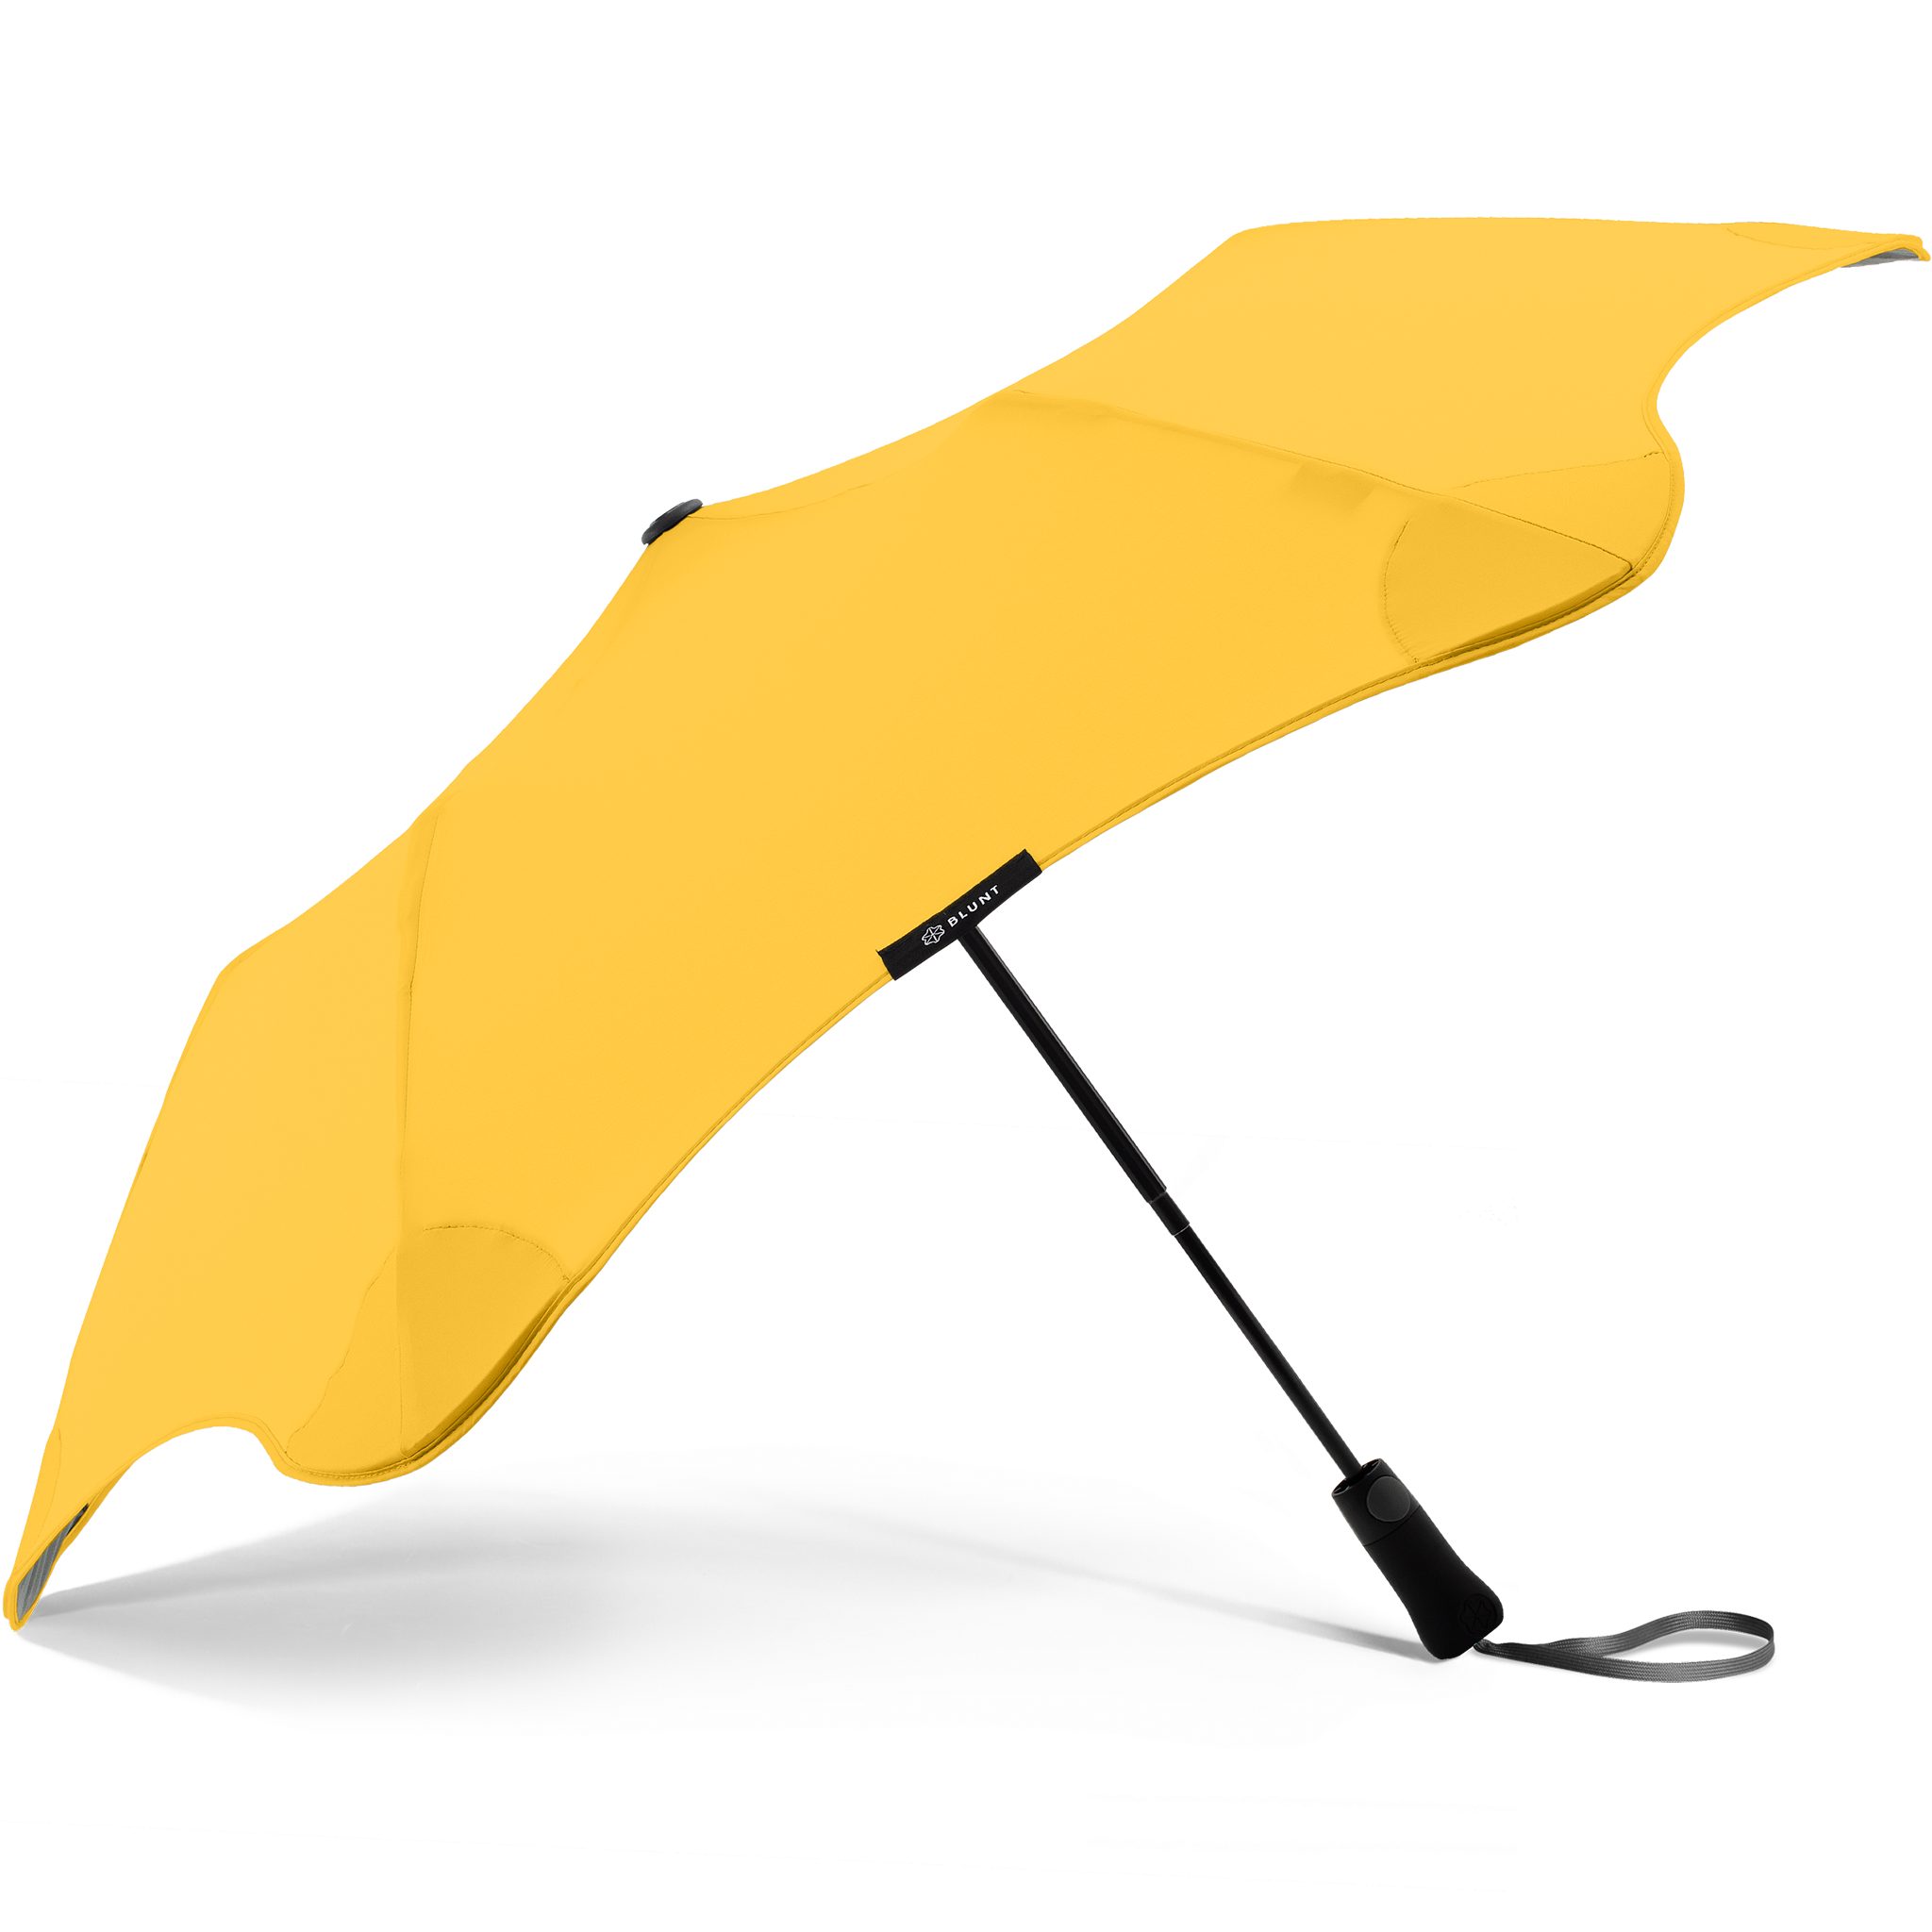 Blunt Taschenregenschirm Metro, herausragende patentierte Technologie, einzigartige Silhouette gelb